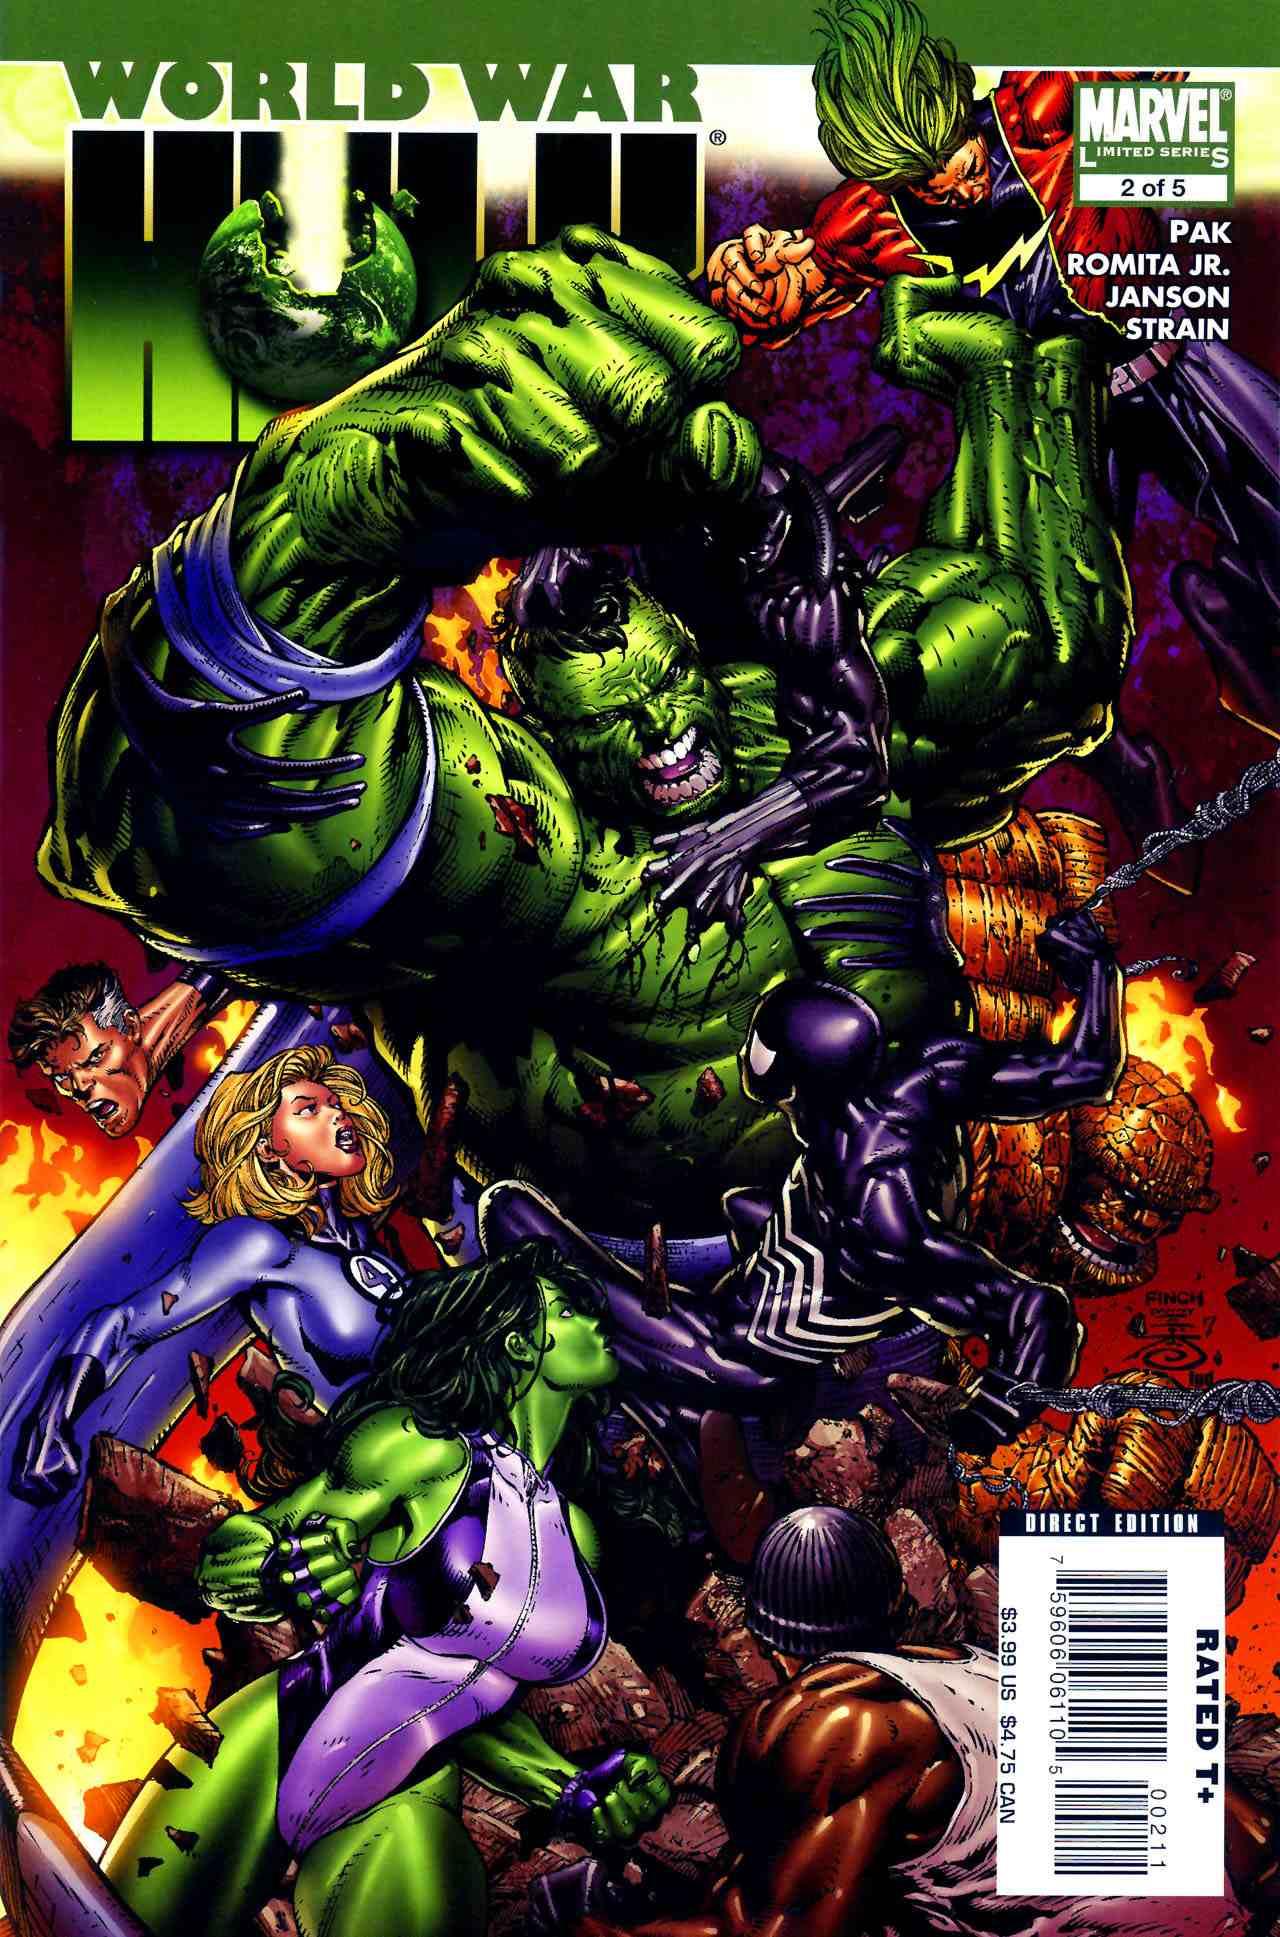 World War Hulk wallpaper, Comics, HQ World War Hulk pictureK Wallpaper 2019